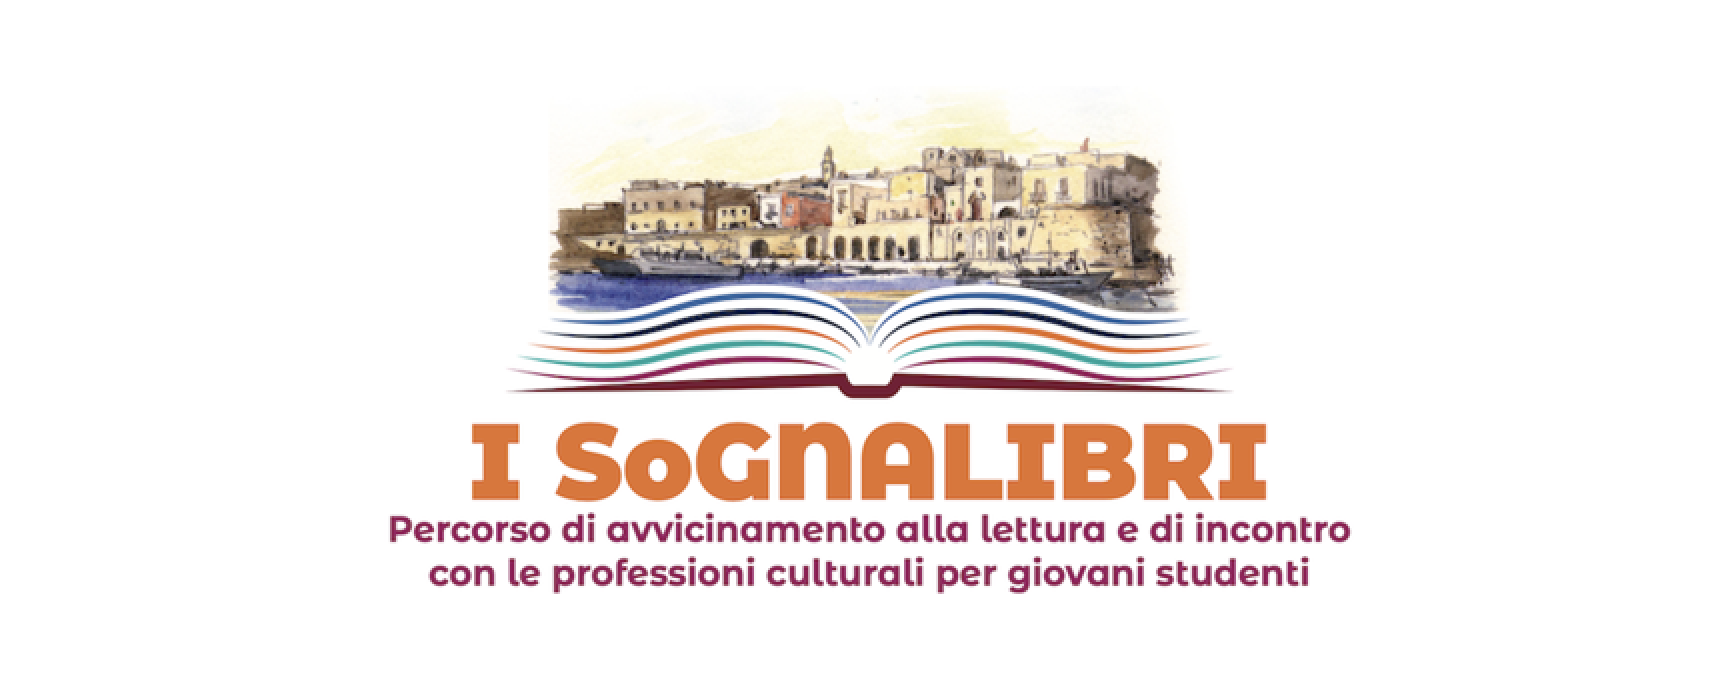 Università Luiss e Libri nel Borgo Antico ancora insieme per il progetto “I SoGNALIBRI”